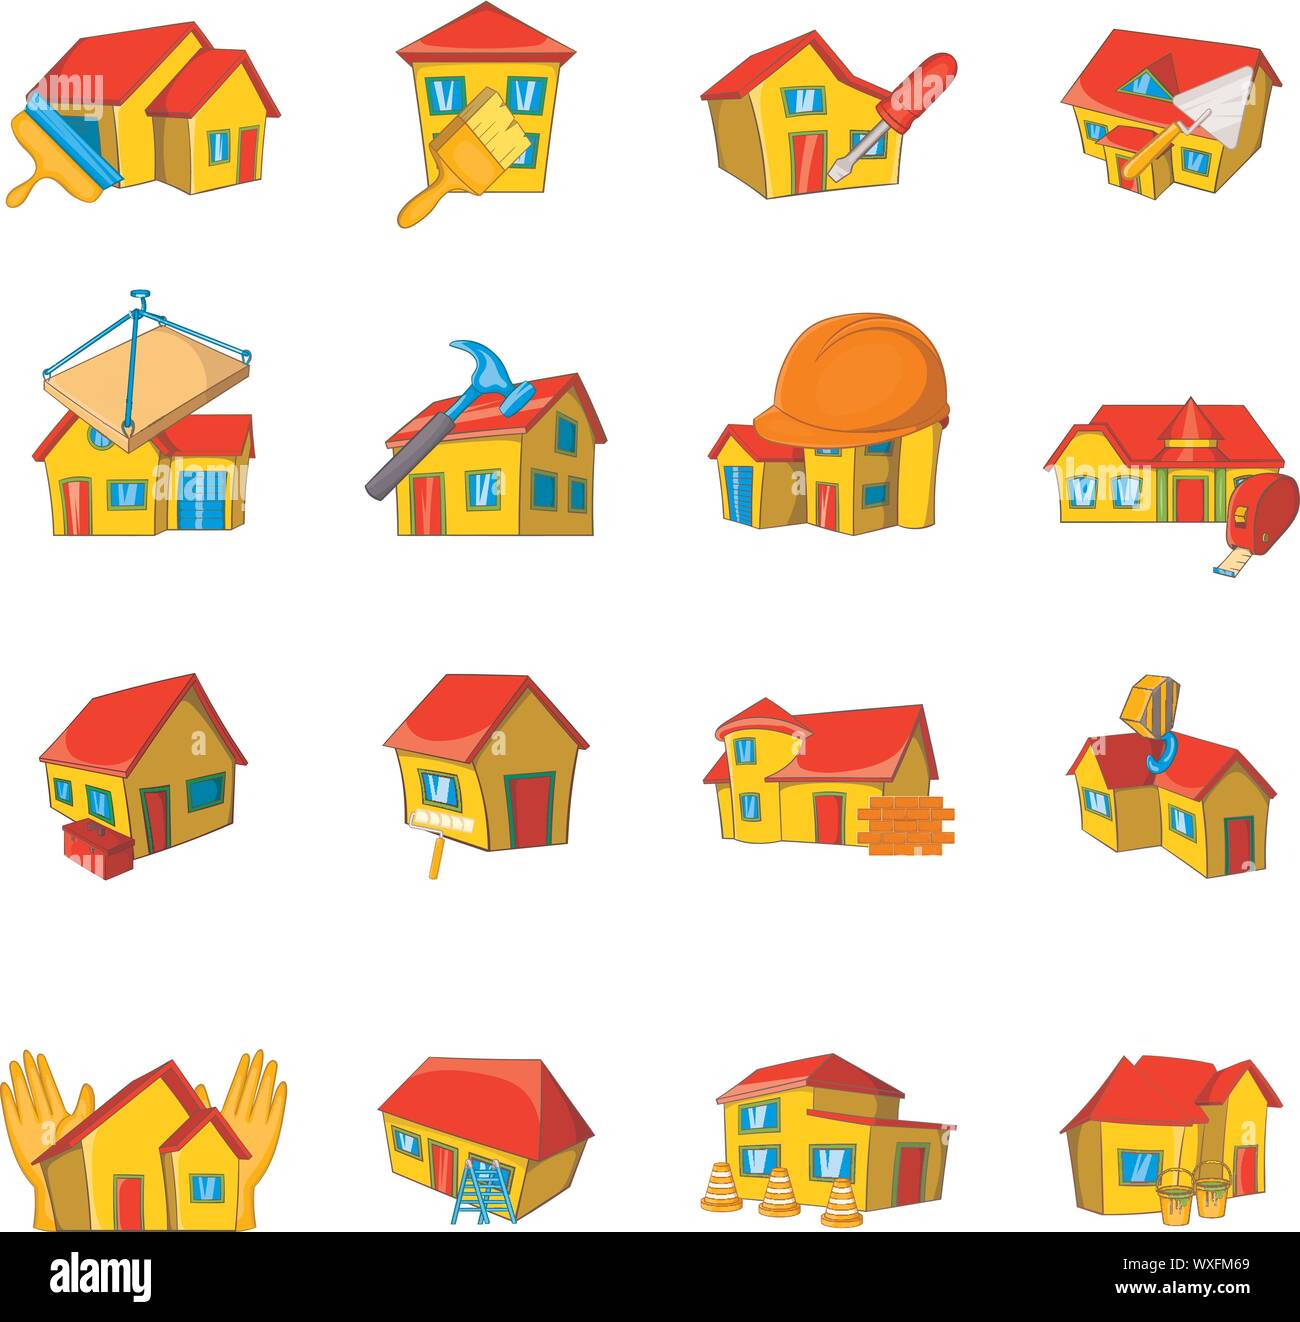 Maison de réparation icons set. Série de dessins animés 16 maison réparation vector icons for web isolé sur fond blanc Illustration de Vecteur